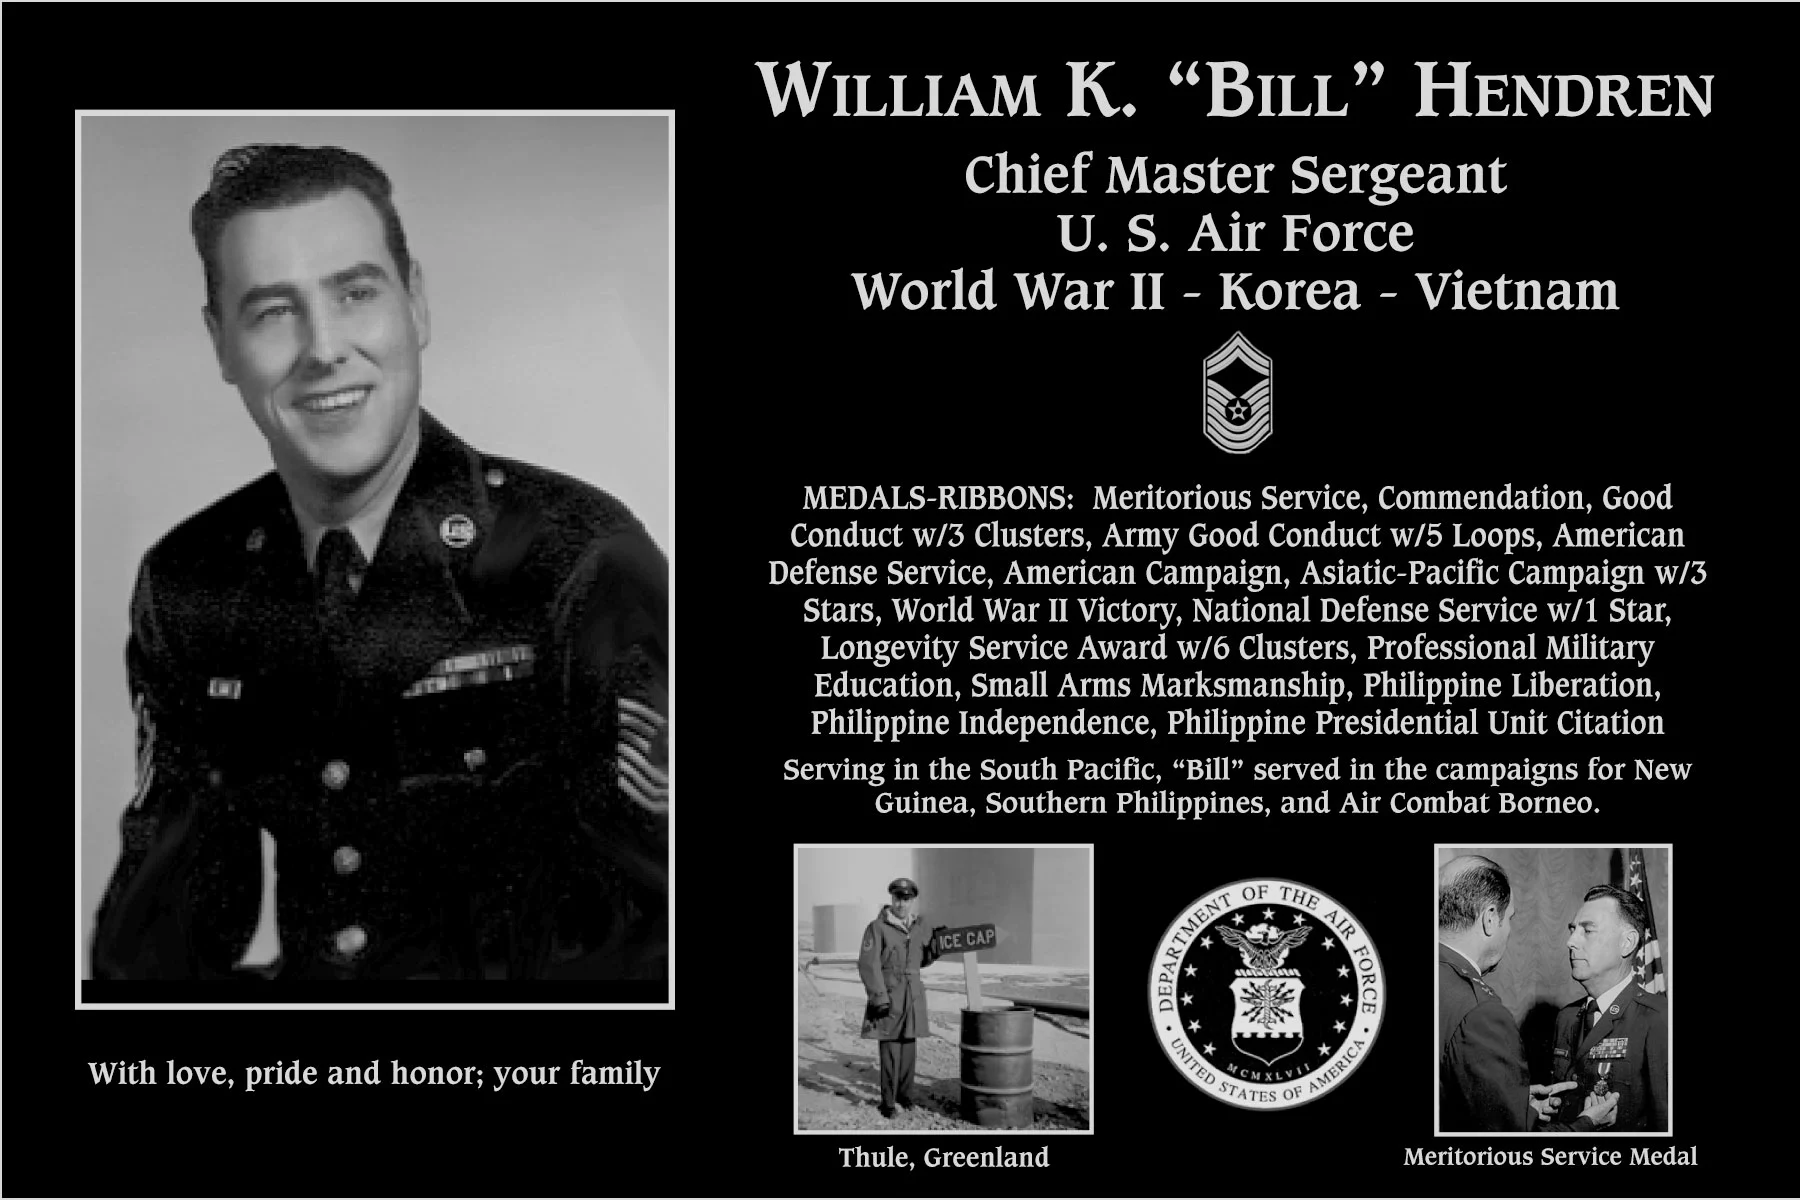 William K “Bill” Hendren